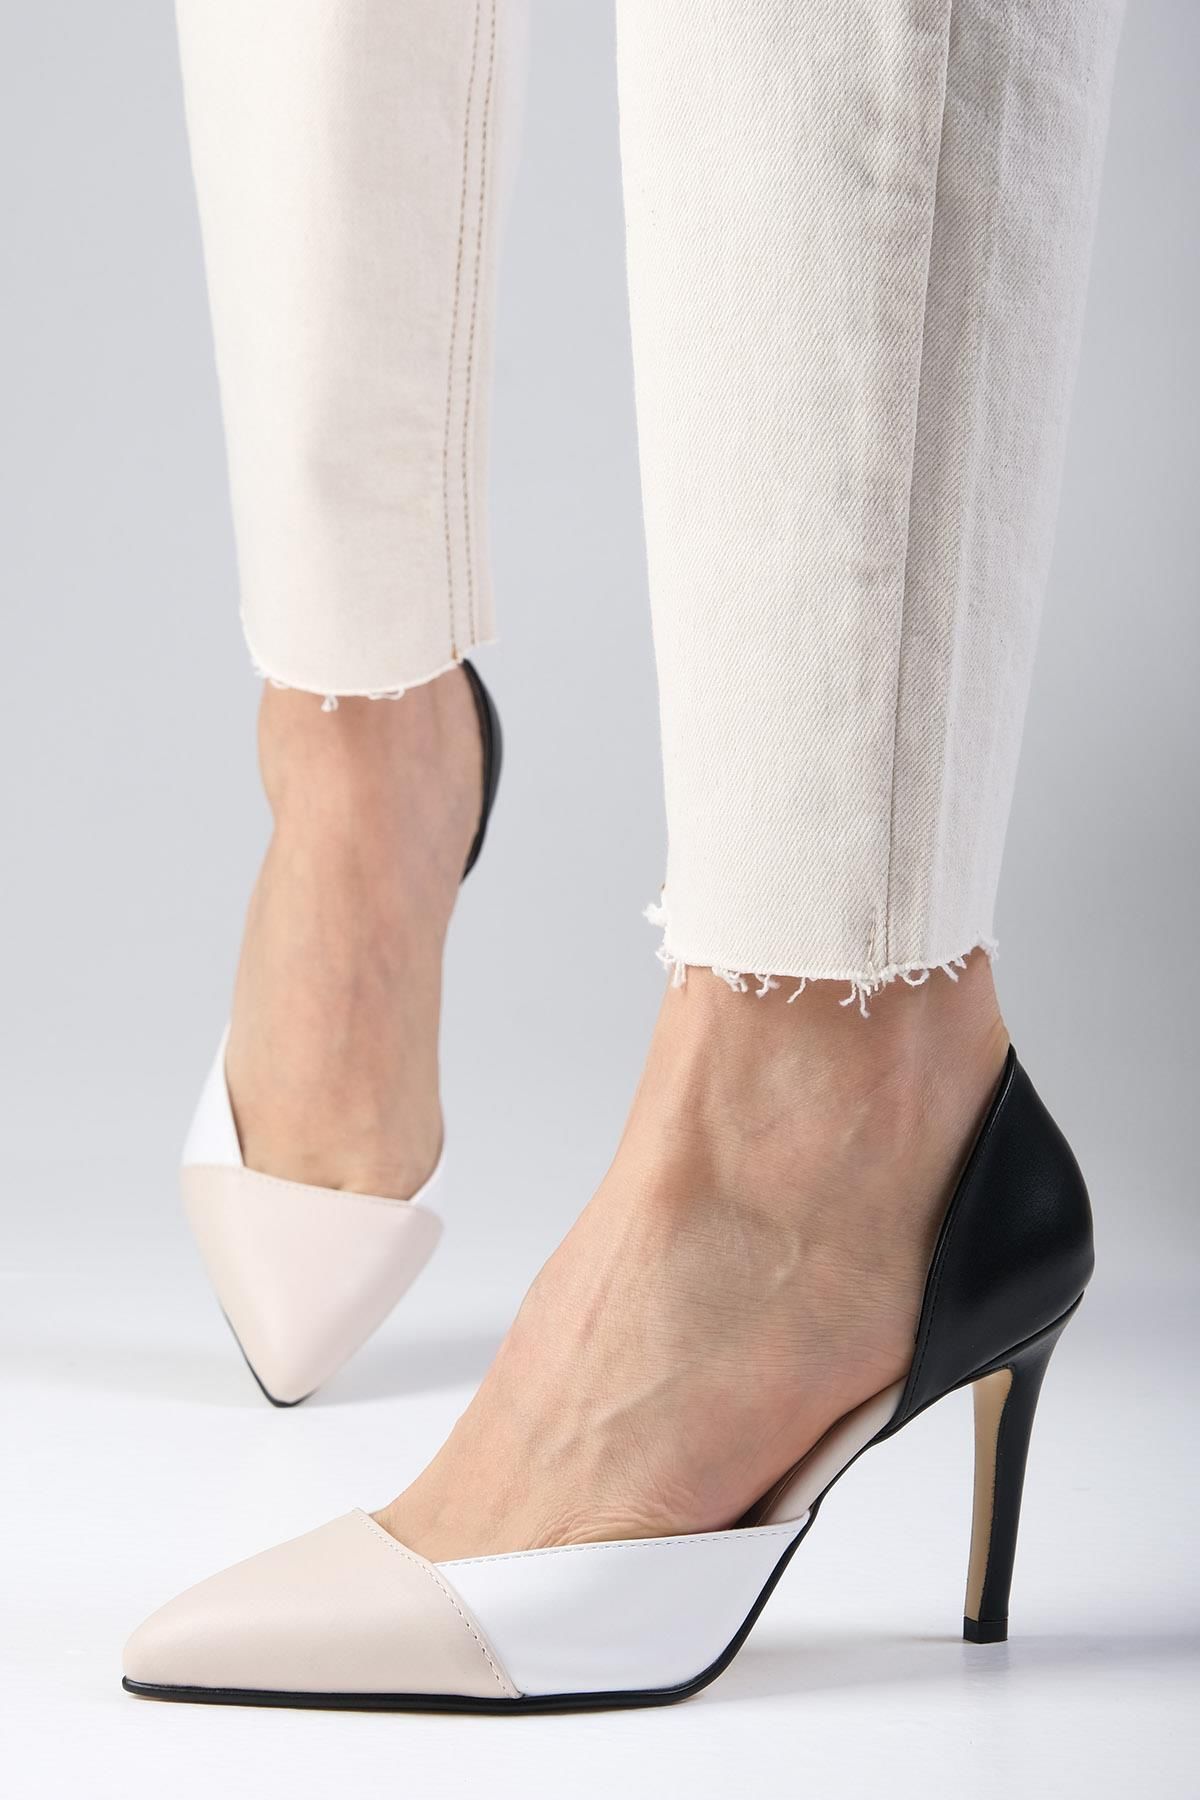 Mio Gusto Brien Ten Rengi, Beyaz Ve Siyah Renk Kombinasyonlu Kadın Stiletto Topuklu Ayakkabı